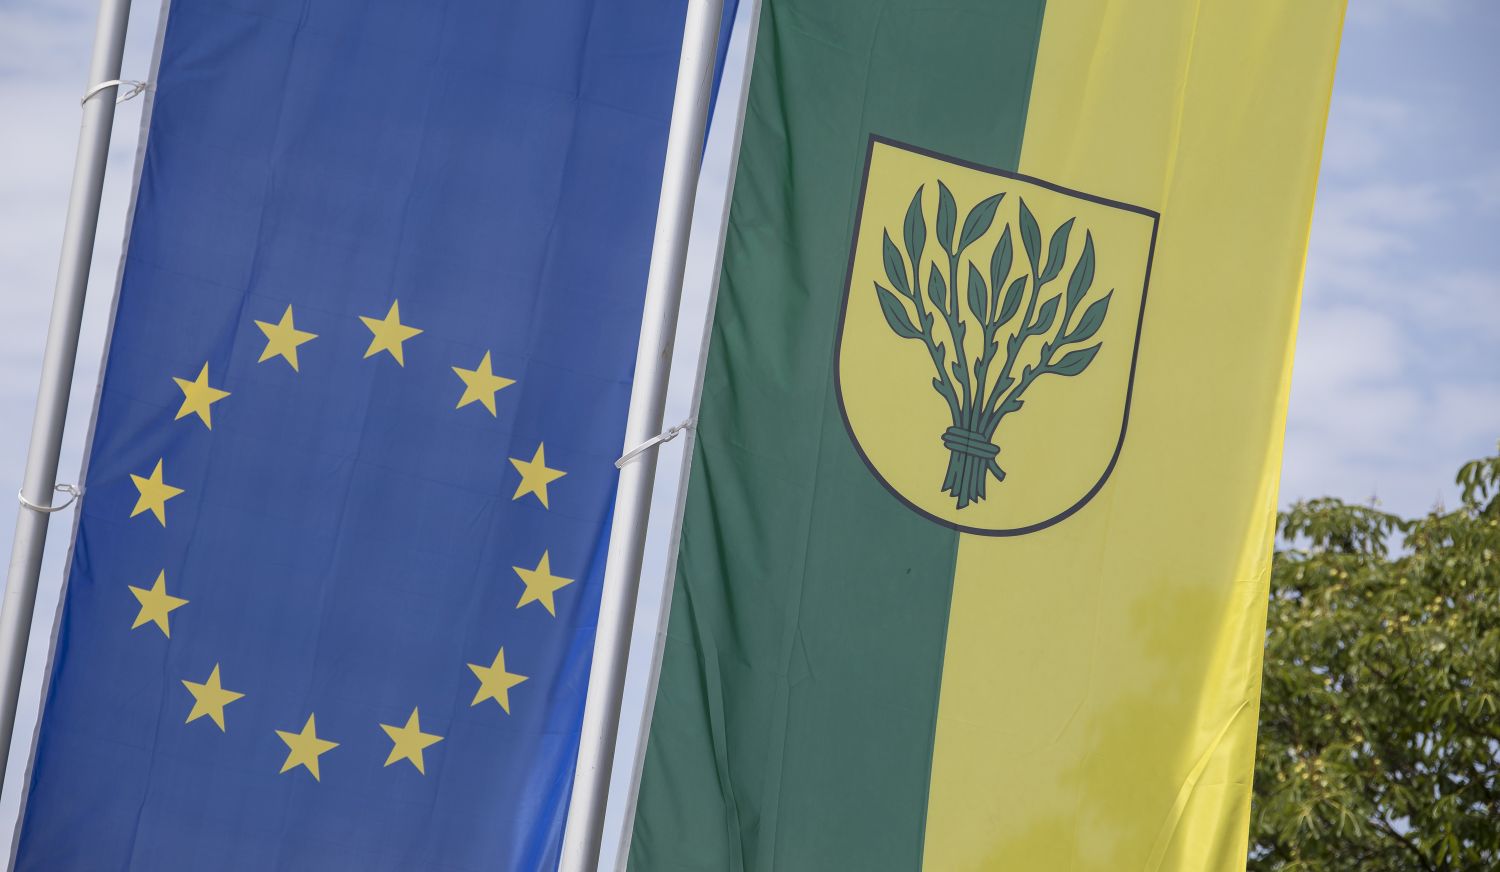 Zu sehen ist links die blaue Europa-Flagge mit im Kreis angeordneten gelben Sternen und rechts die gelb-grüne Flagge mit dem Wappen der Stadt Rutesheim.             